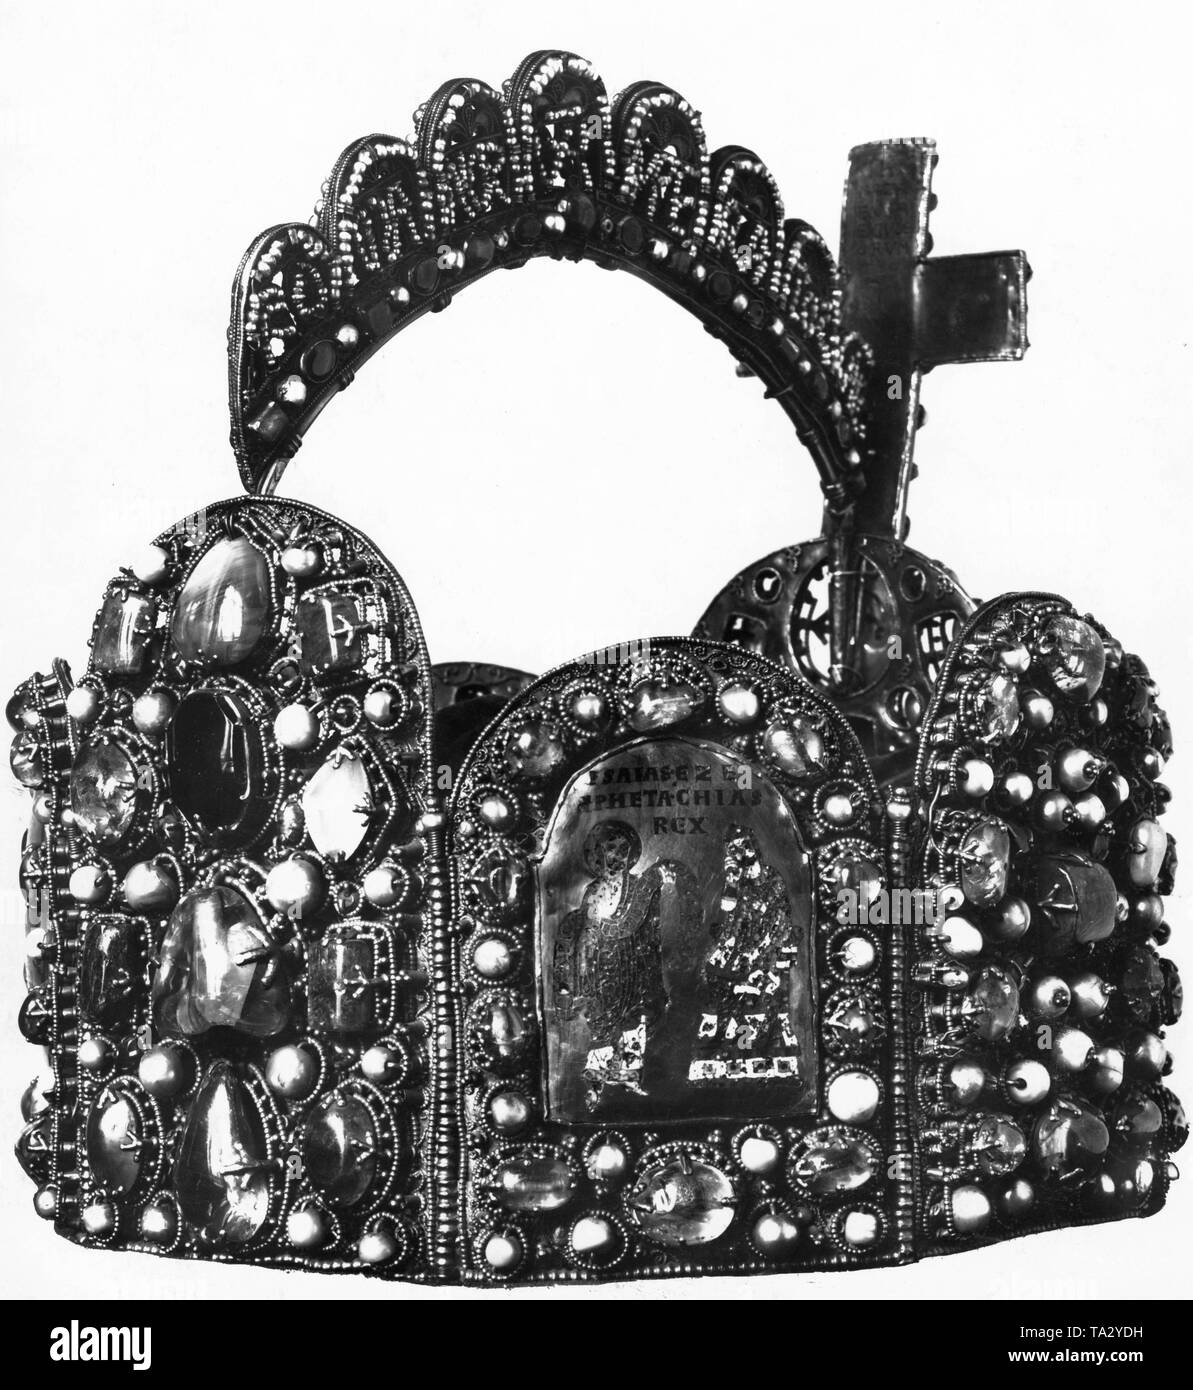 La couronne impériale allemande a été faite probablement pour le couronnement d'Otton le Grand au 10ème siècle sur Reichenau. L'arche a été ajouté en vertu de Conrad II (1024-1039). Banque D'Images